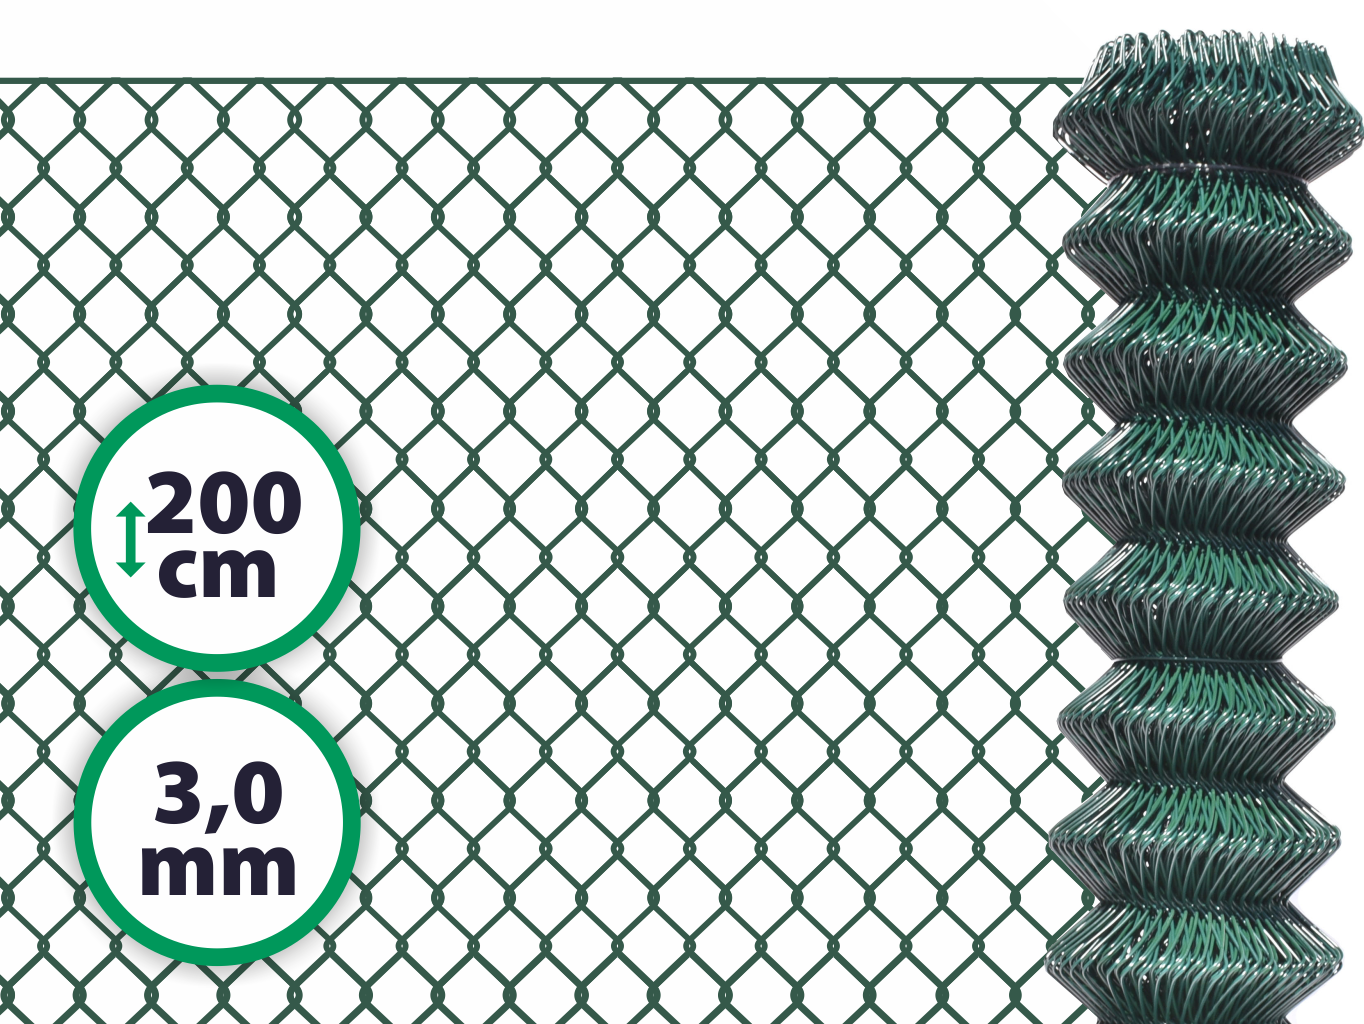 Pletivo poplastované SUPER – 200 cm bez ND (3,0 mm; 50x50 mm; PVC; zelené) PLOTY Sklad5 1504 50 8595068446539